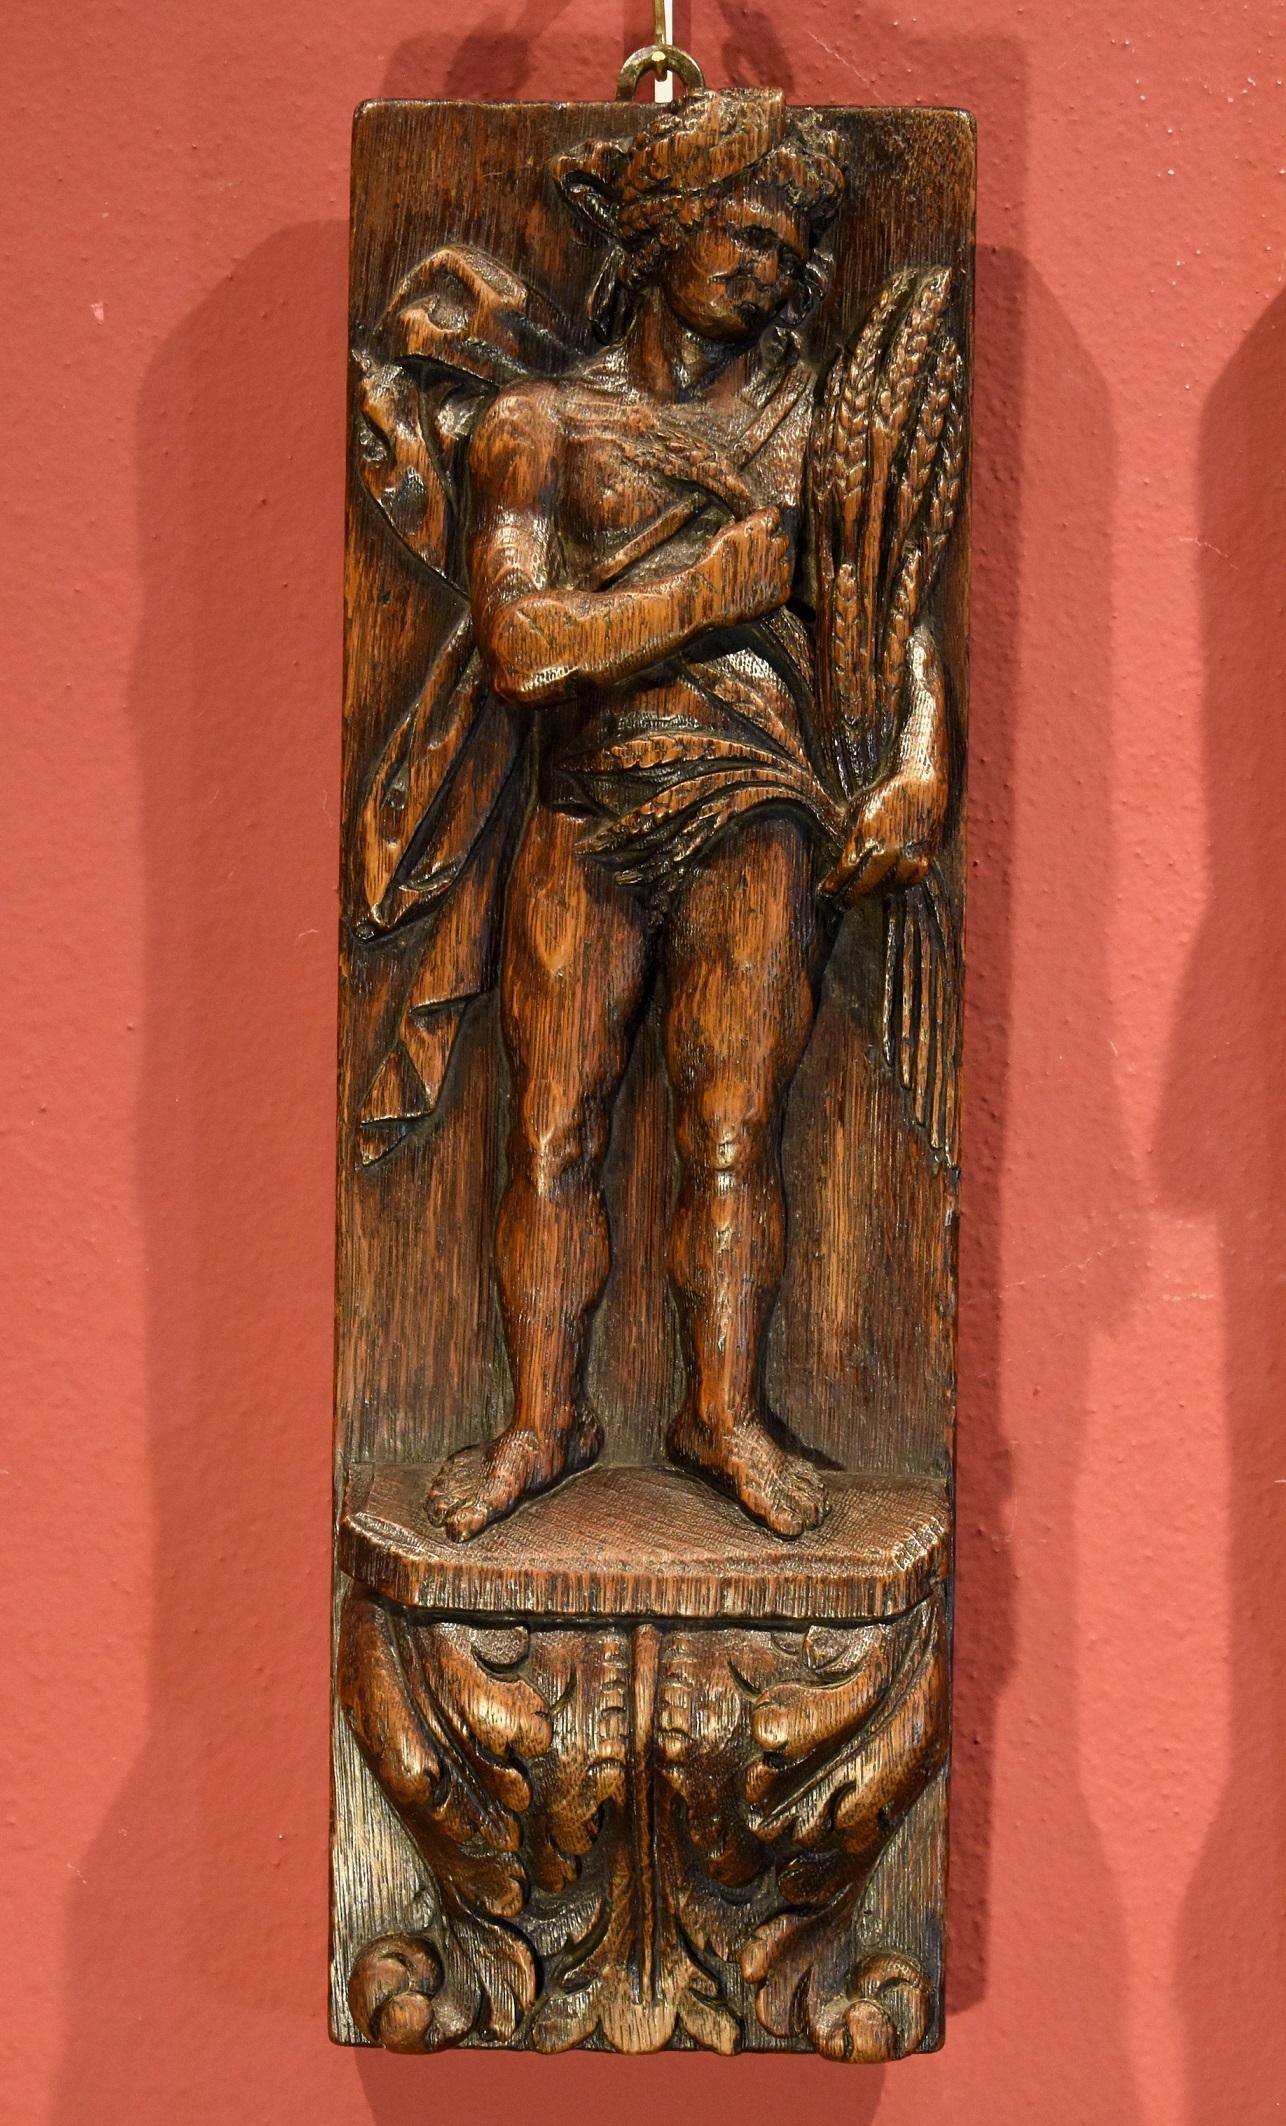 Paire de bas-reliefs Printemps Automne Sculpteur Flemish 17ème siècle Wood   - Maîtres anciens Sculpture par Flemish sculptor of the 17th century